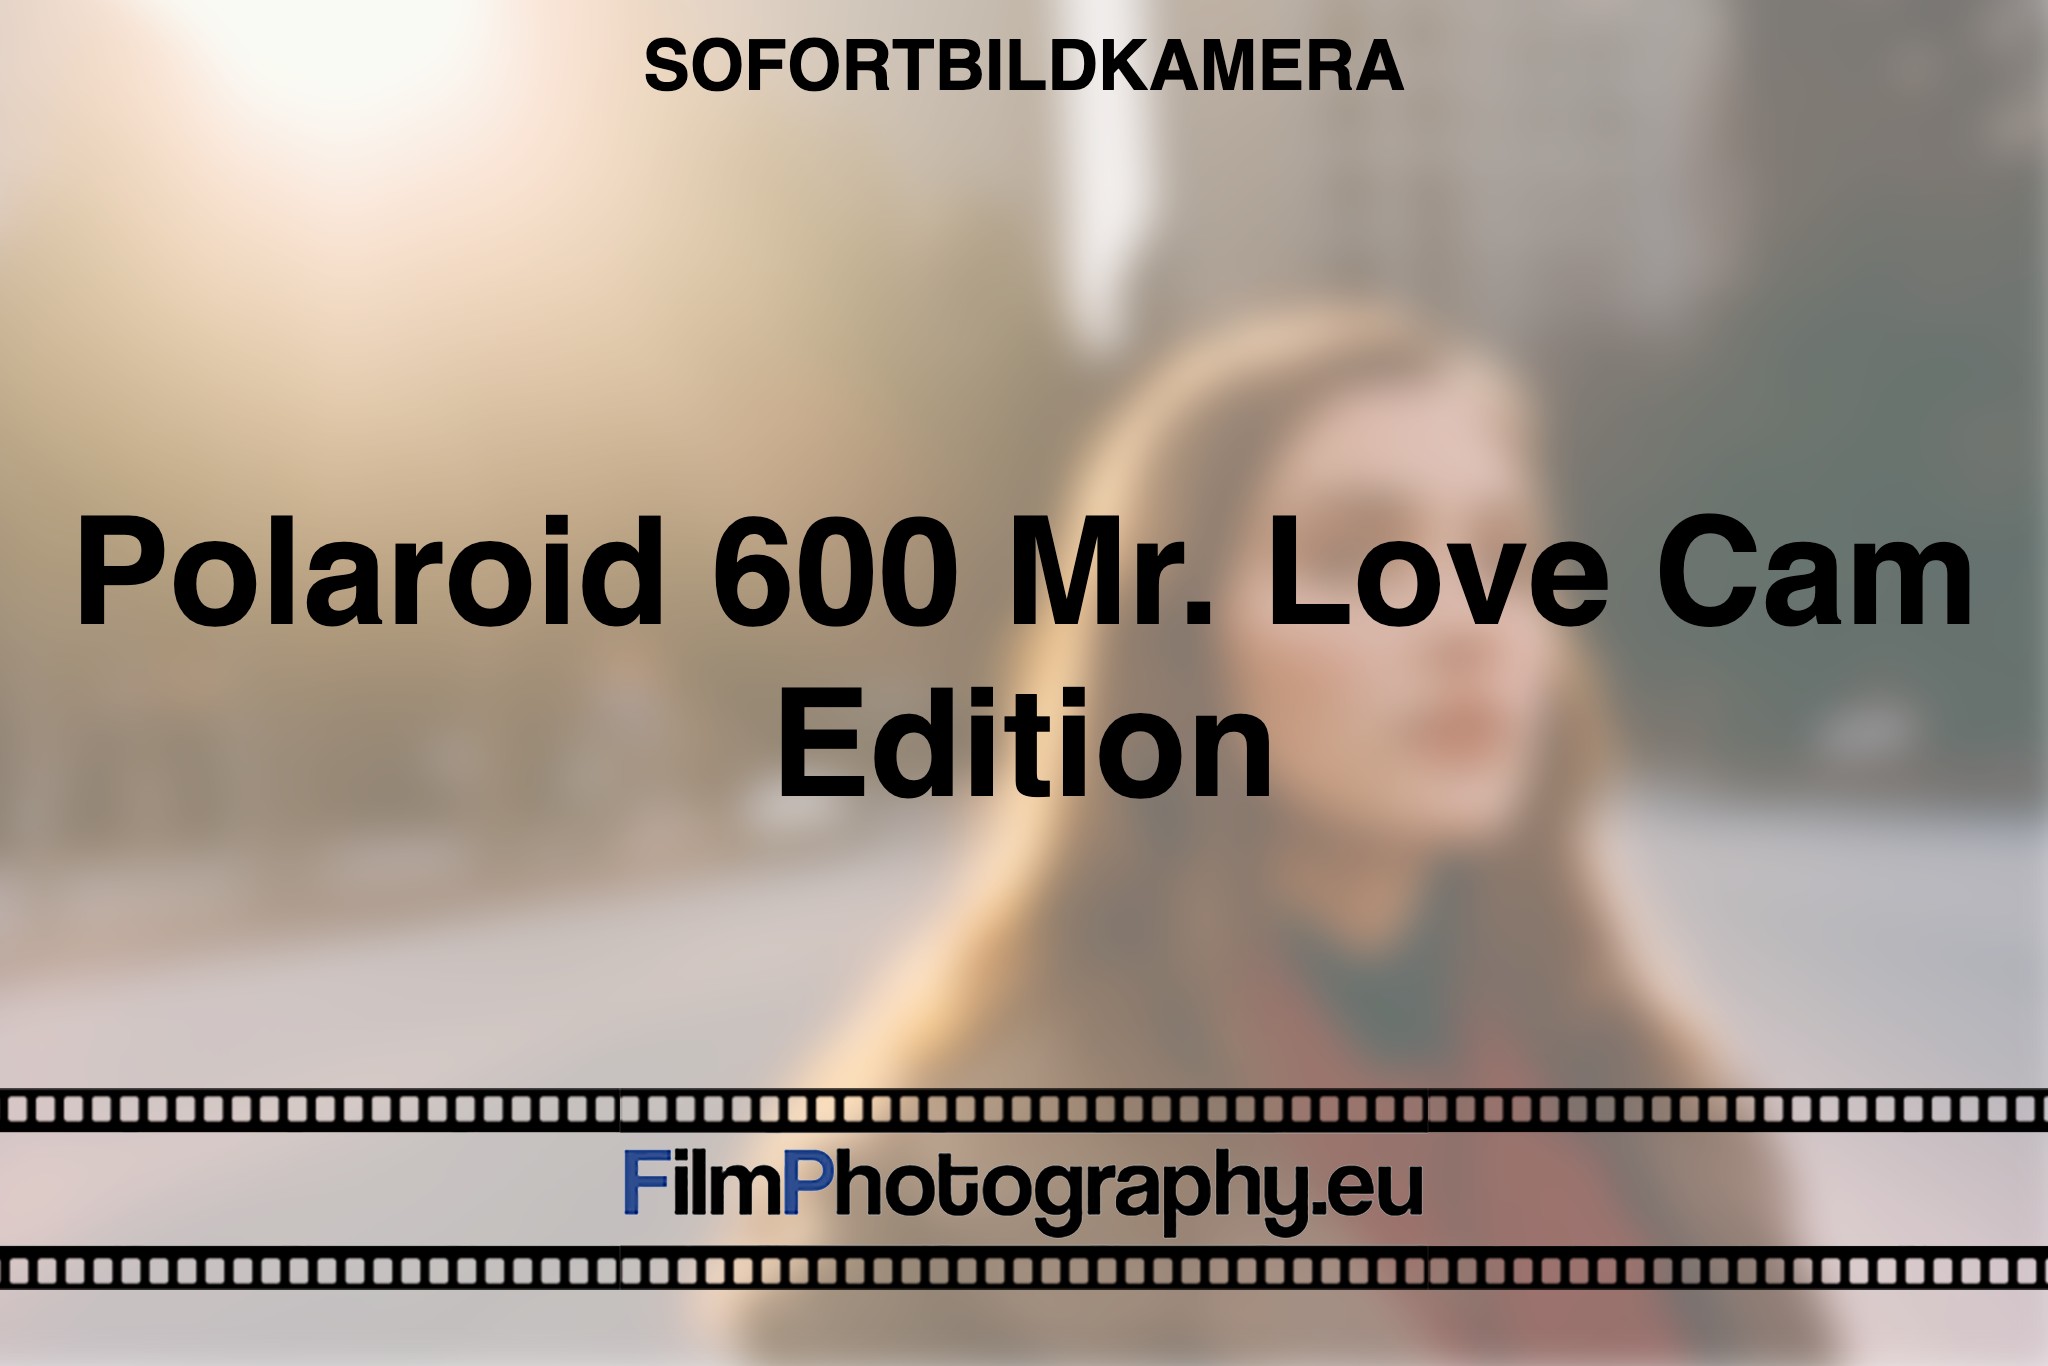 polaroid-600-mr-love-cam-edition-sofortbildkamera-bnv